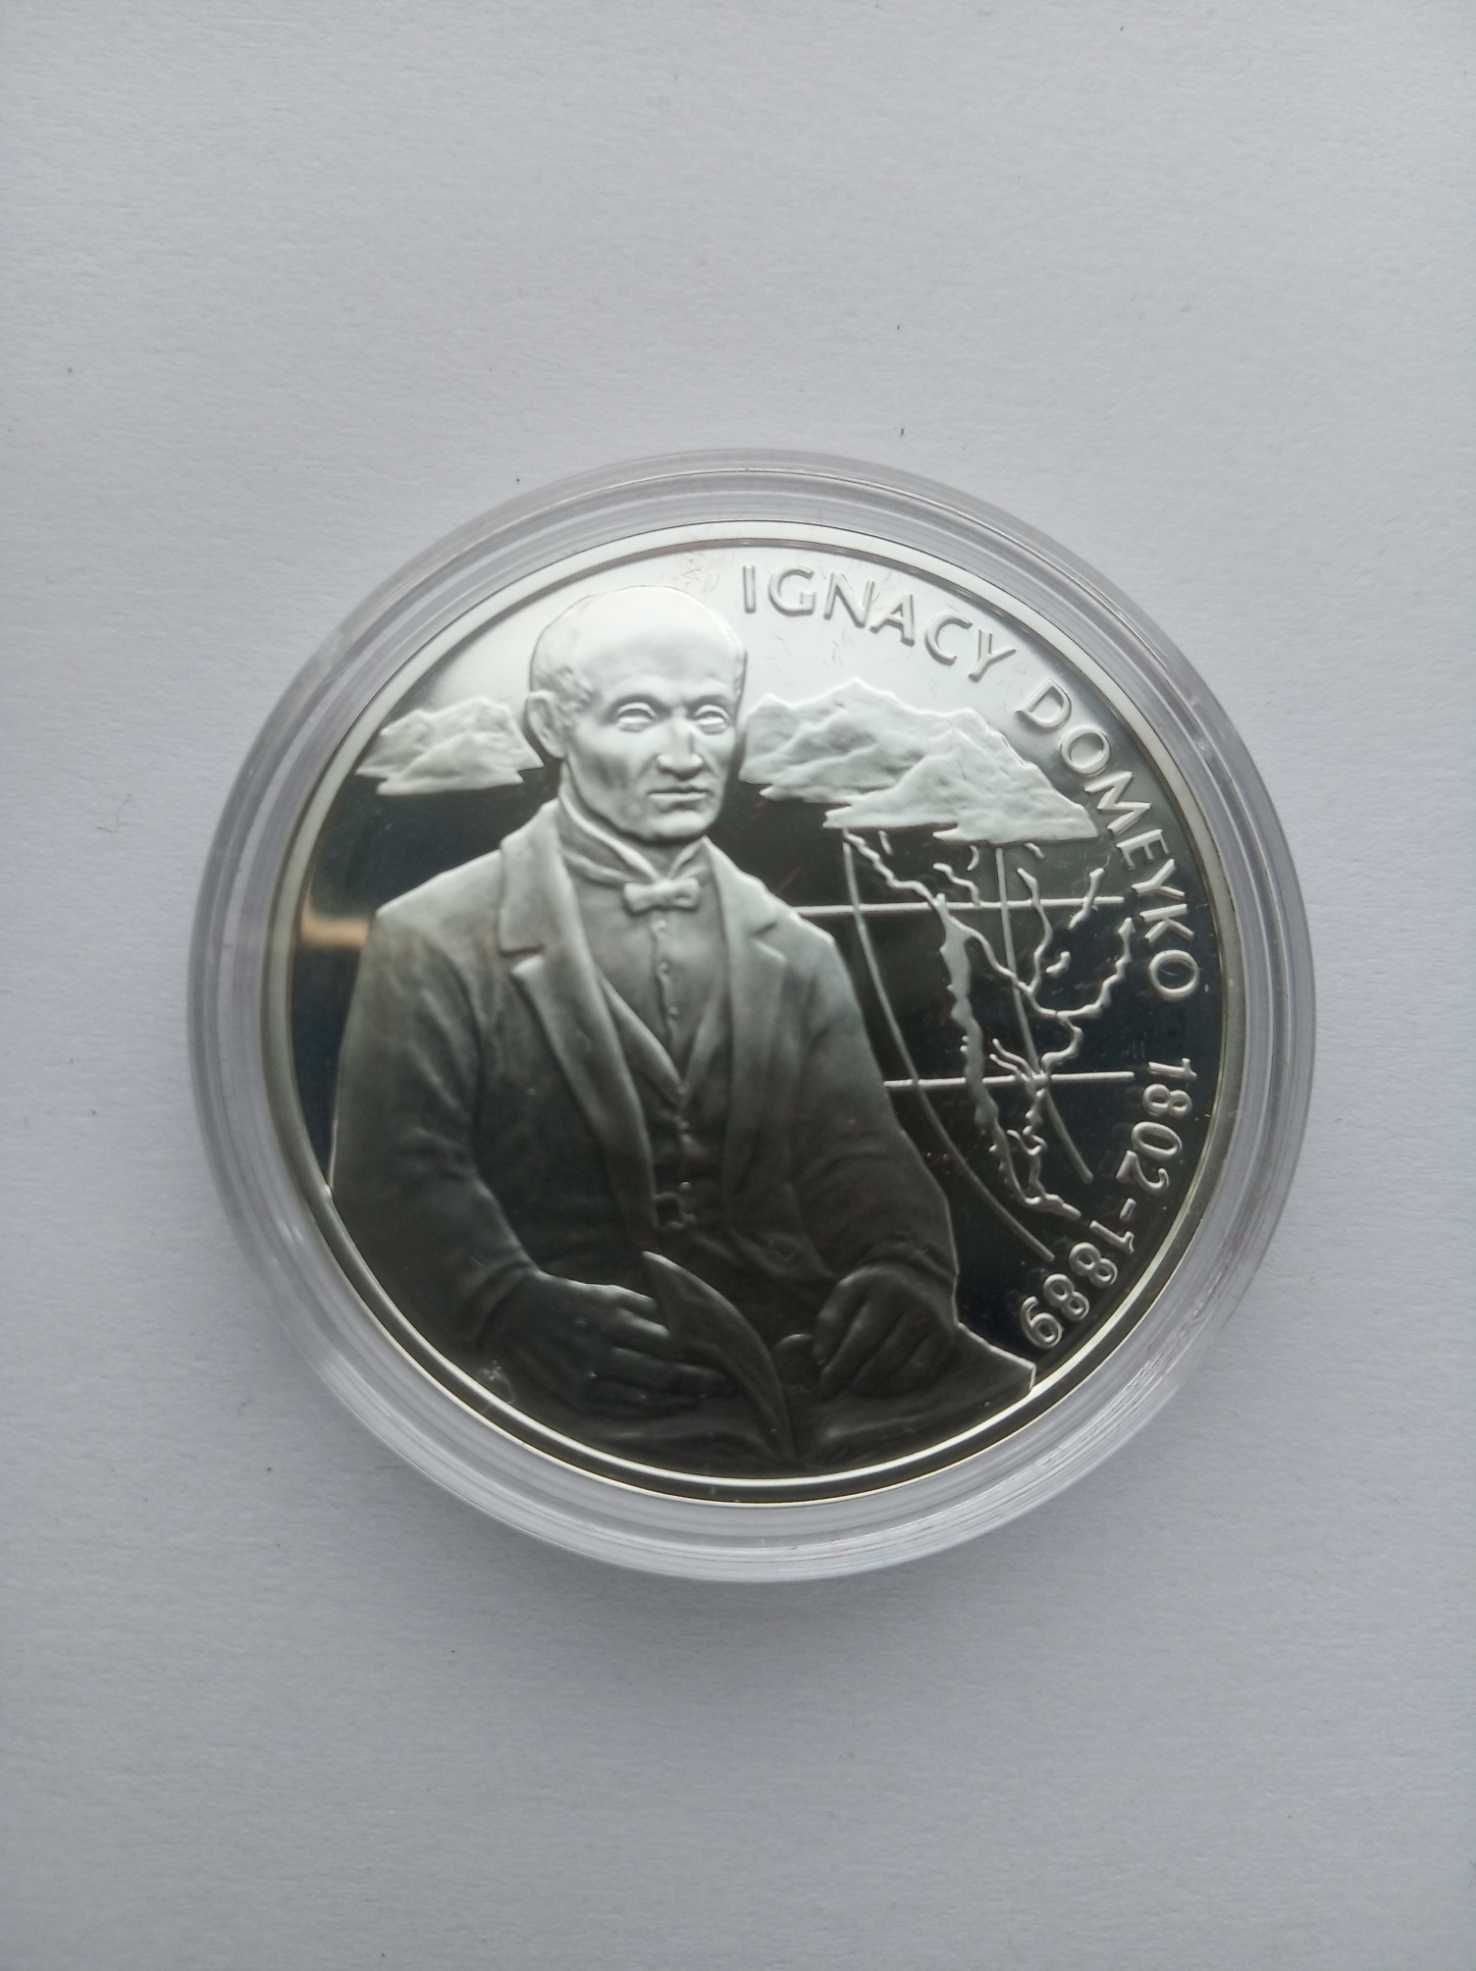 Moneta NBP 10 zł (srebro) Ignacy Domeyko